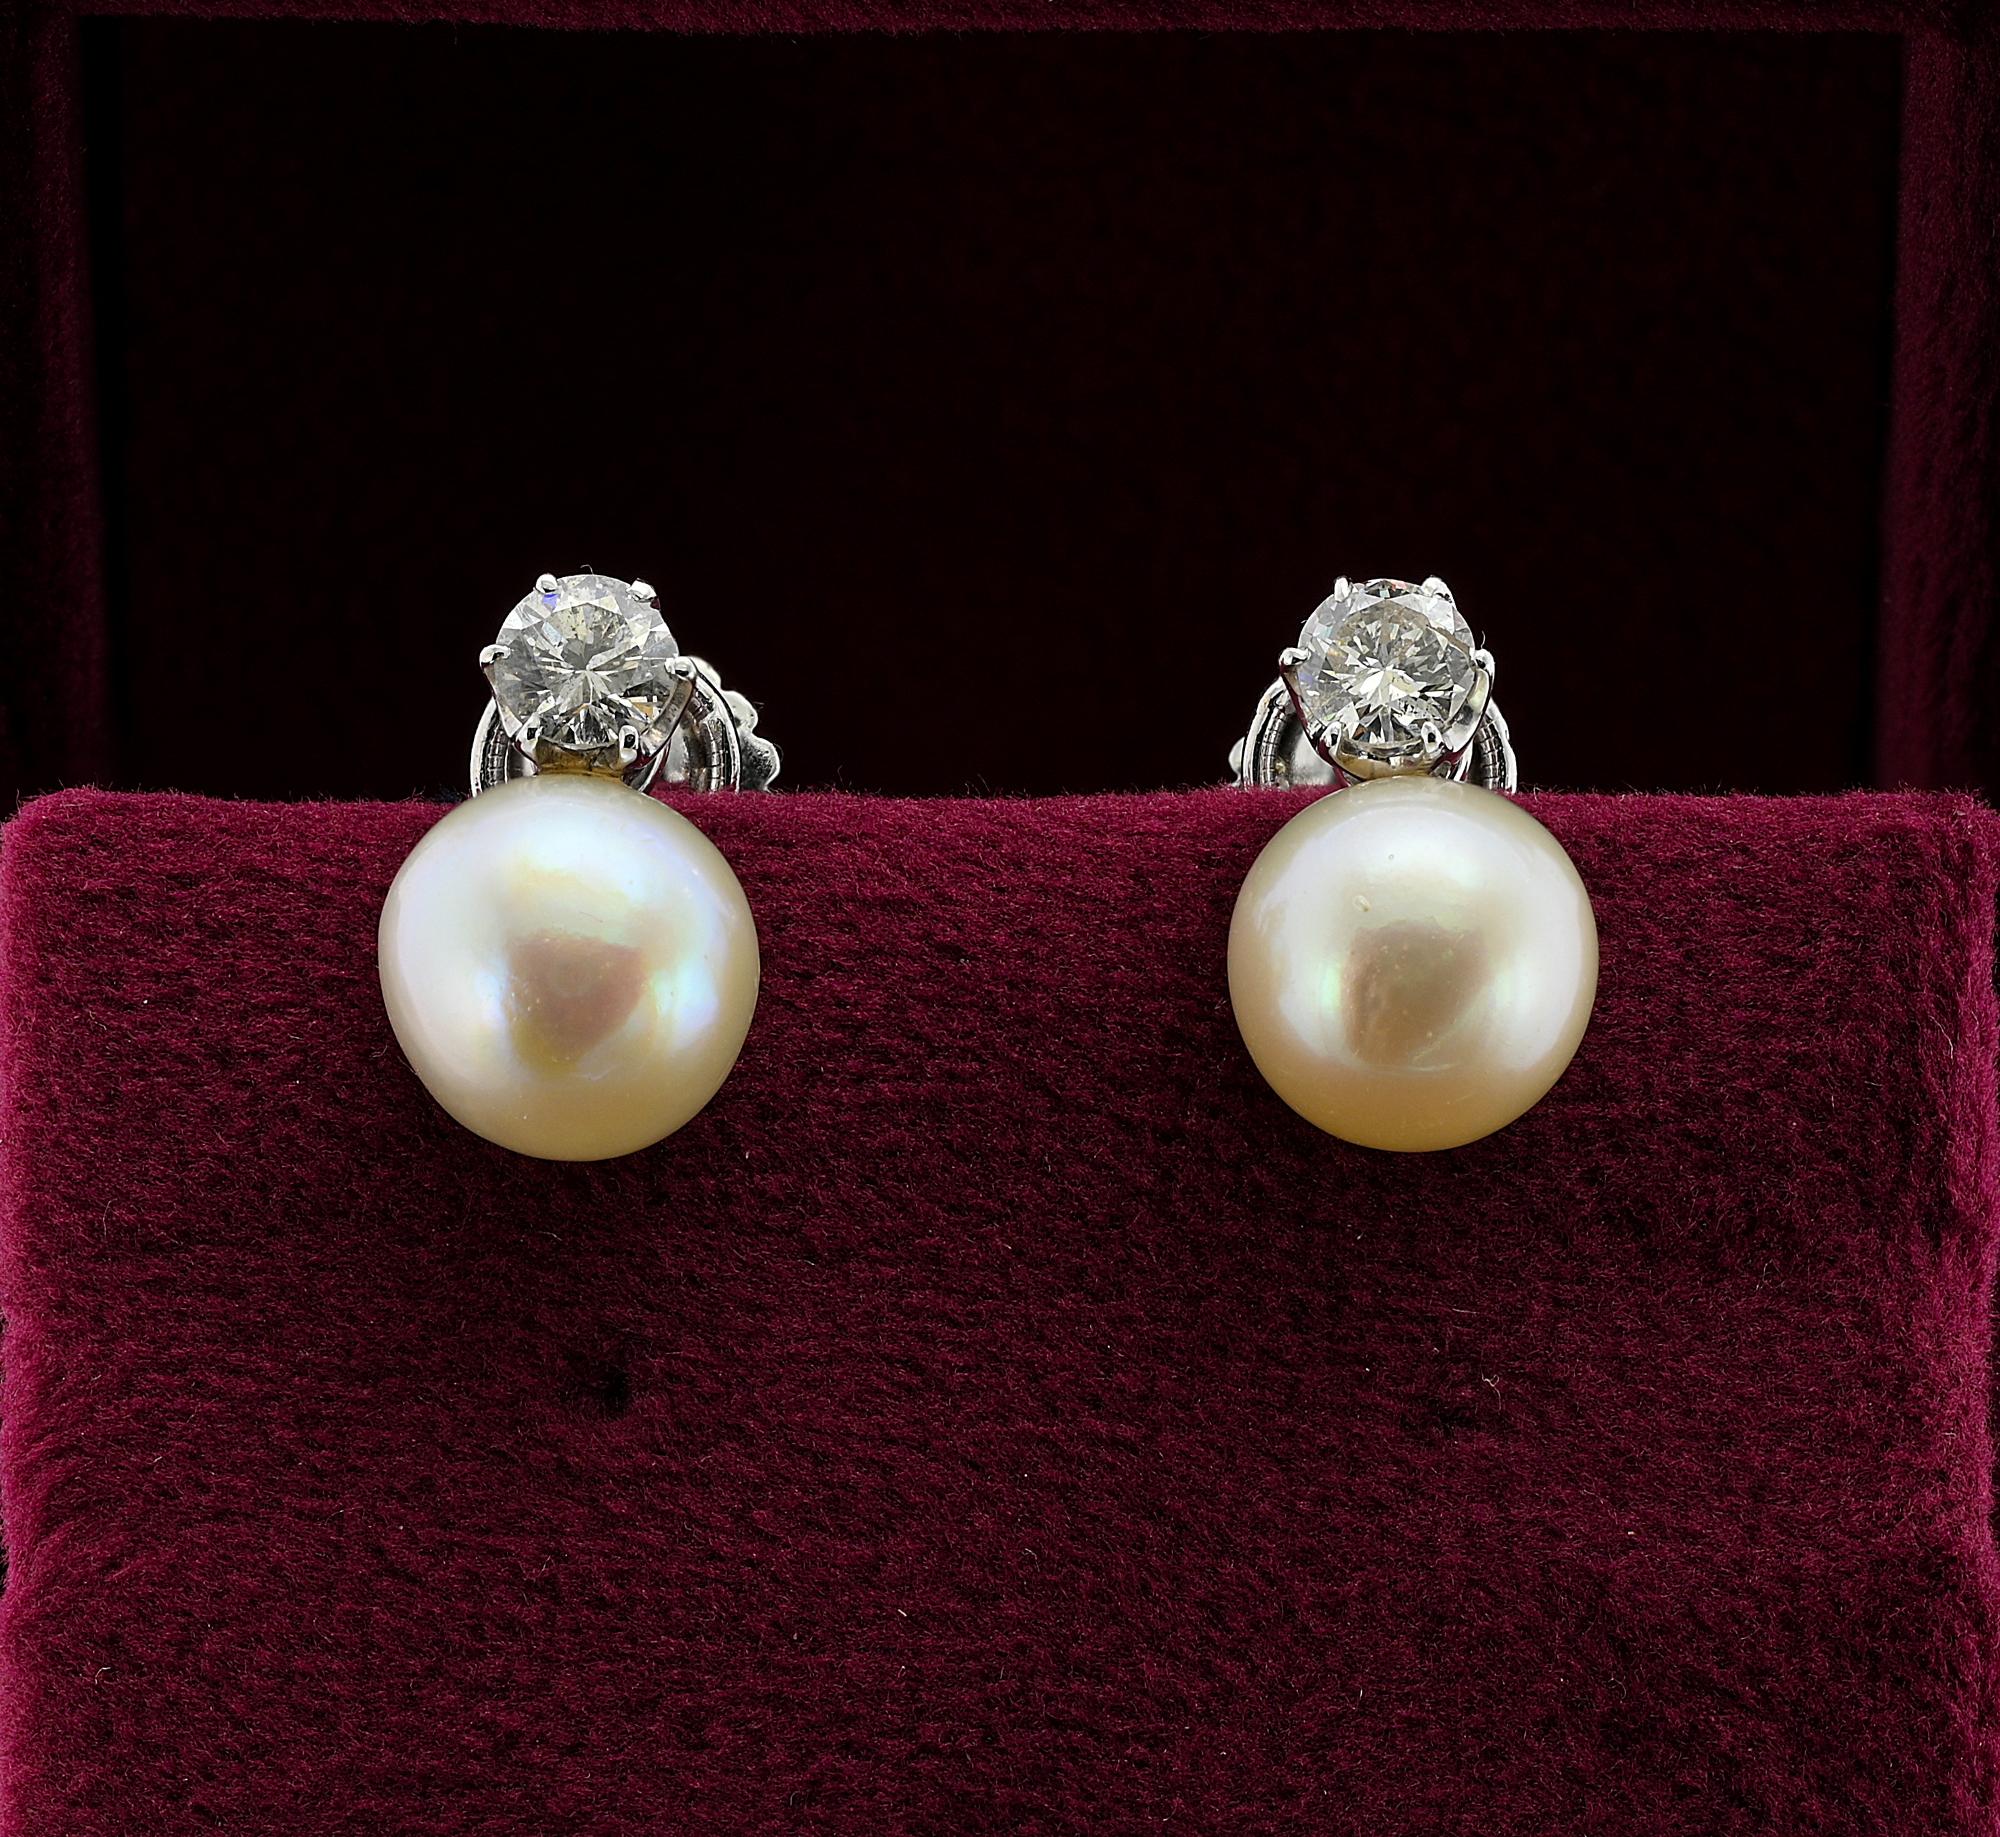 Dieses schöne Vintage-Ohrringpaar stammt aus dem Jahr 1930
Traditionelle Solitär-Perlenfassung, gekrönt von einem einzelnen Diamanten - eines der beliebtesten Designs, das man immer tragen kann
Handgefertigt aus massivem 18 KT Weißgold mit